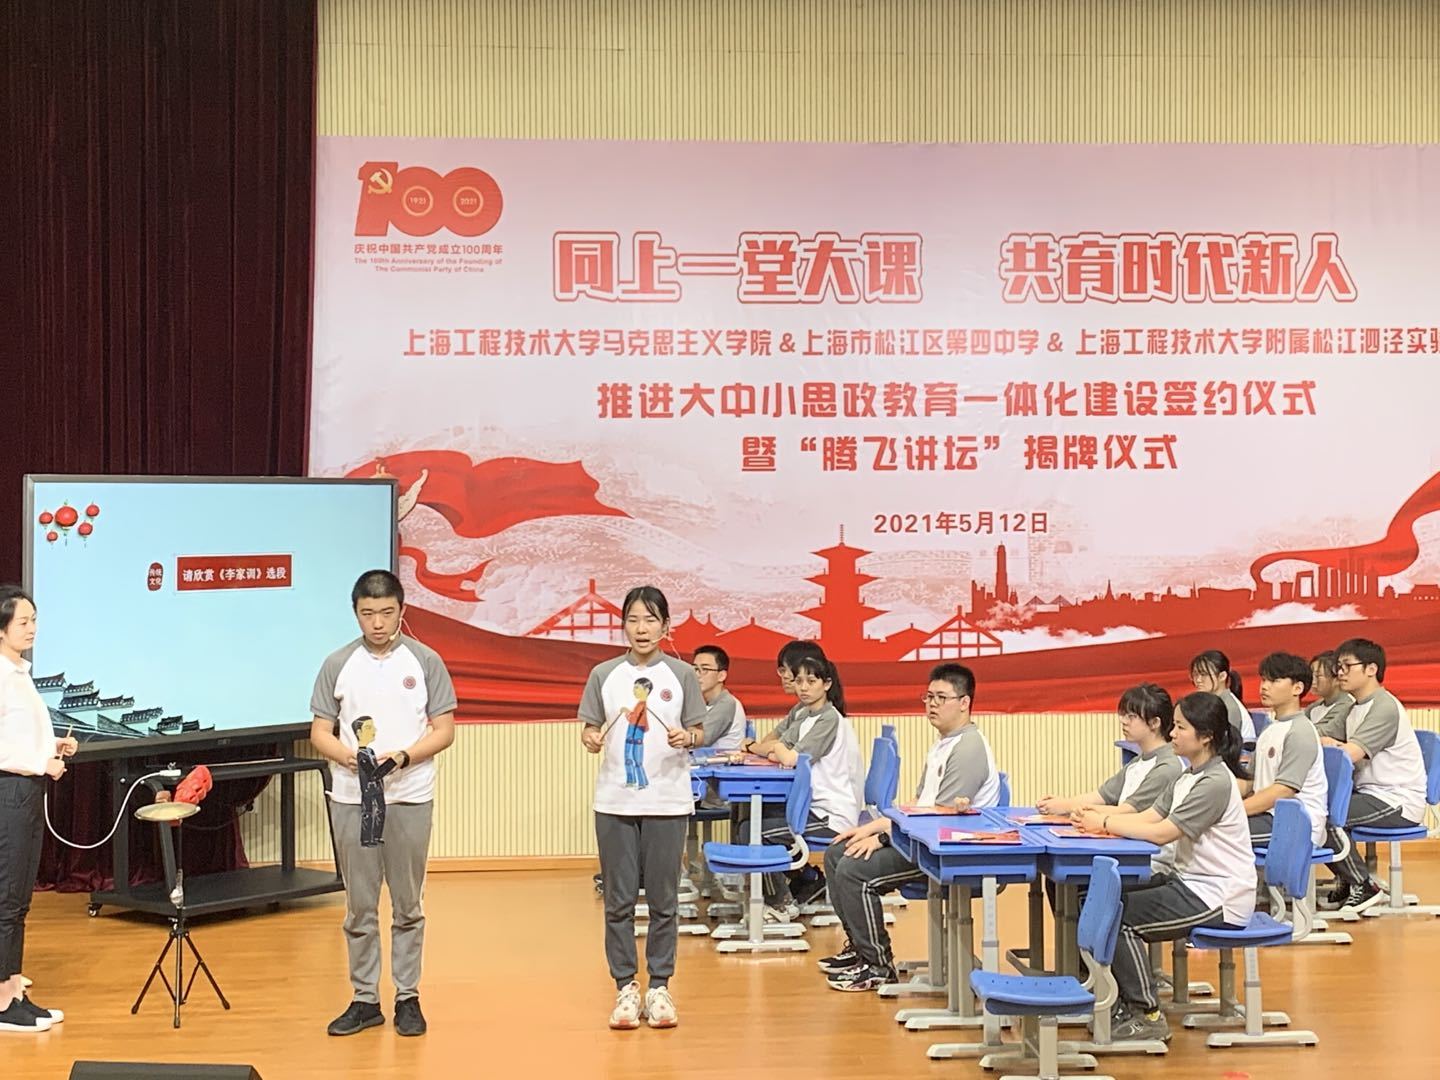 上海大中小学思政课一体化建设集体备课会在学校举行